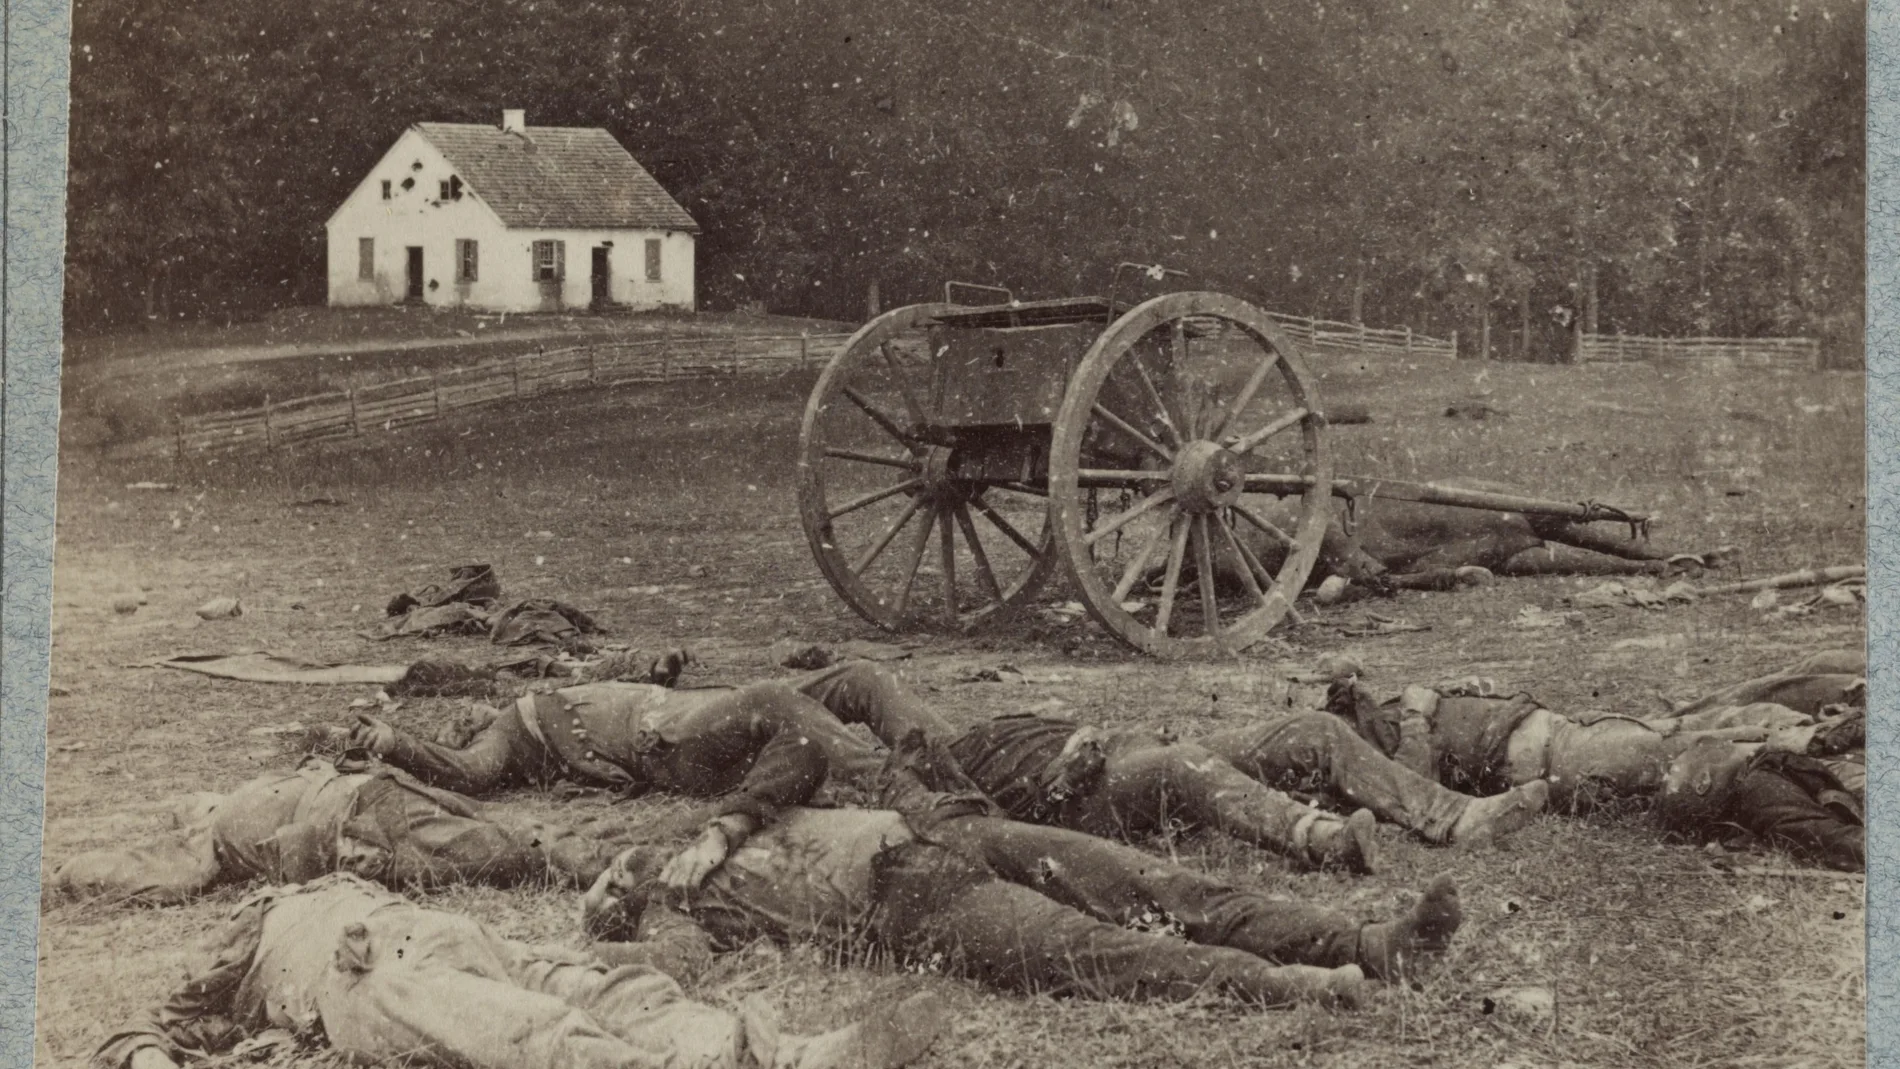 Imagen de la guerra de secesión tomada por Alexandr Gardner